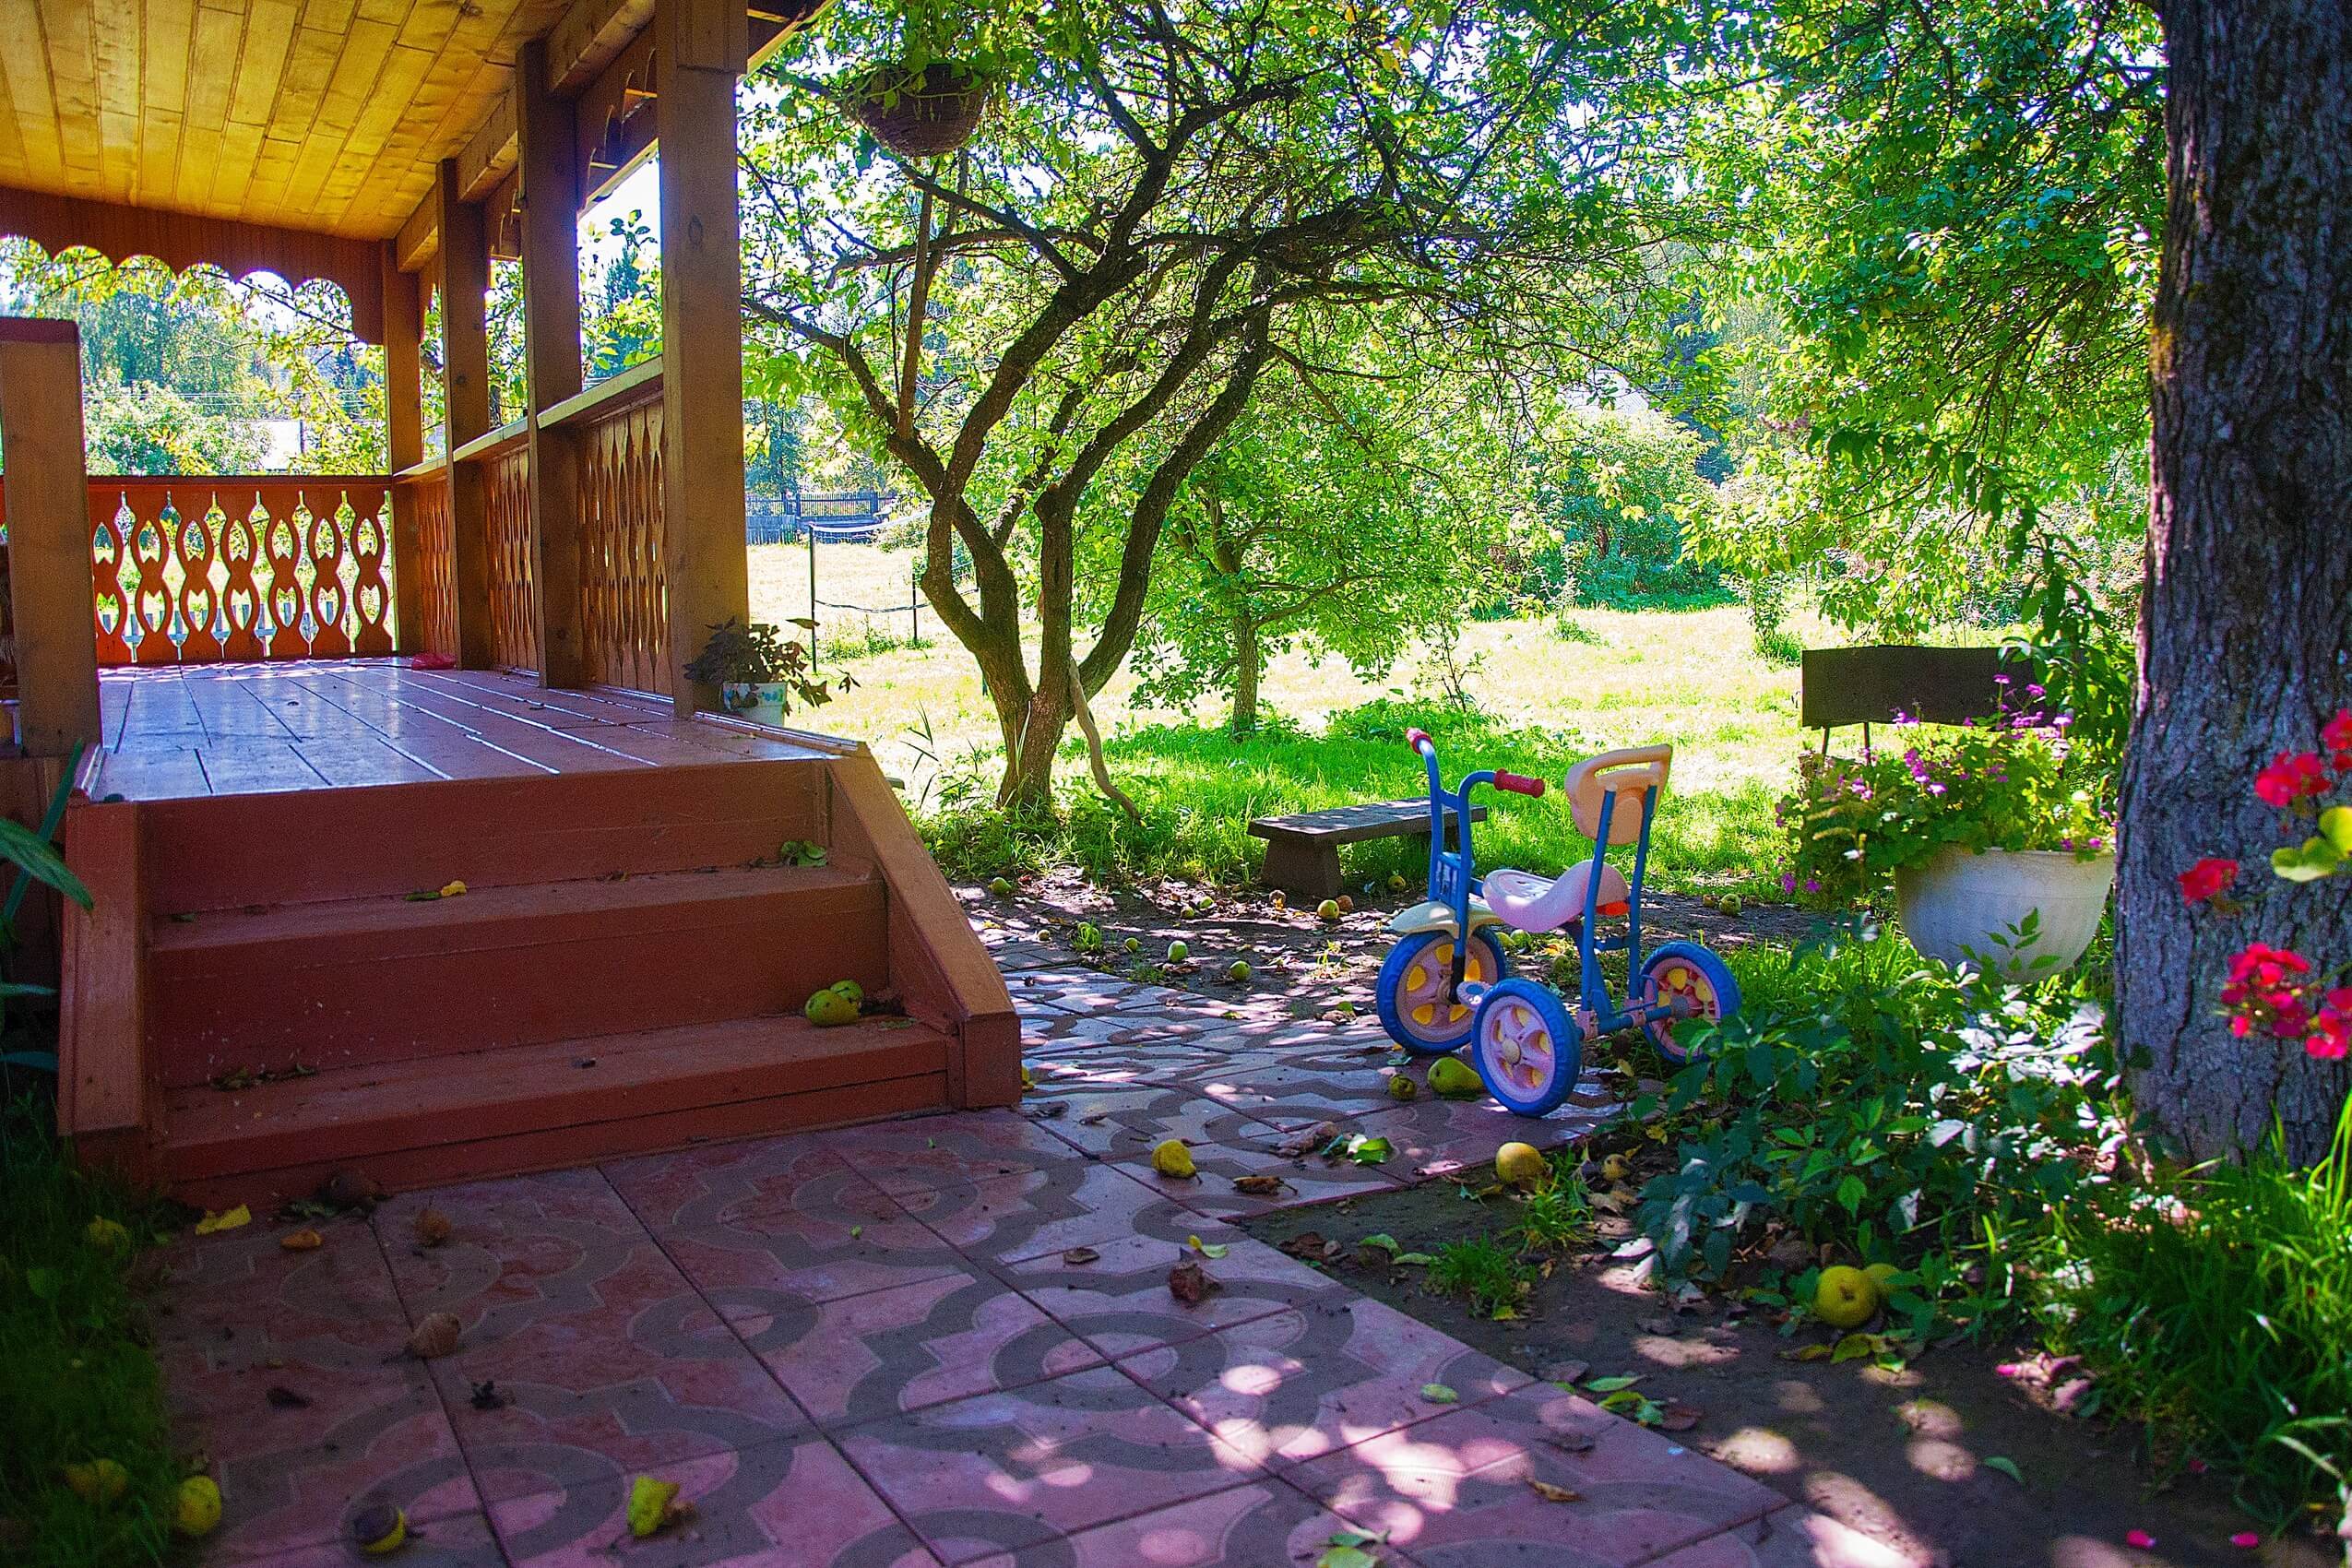 У крыльца на земле лежат яблоки. Стоит детский велосипед.